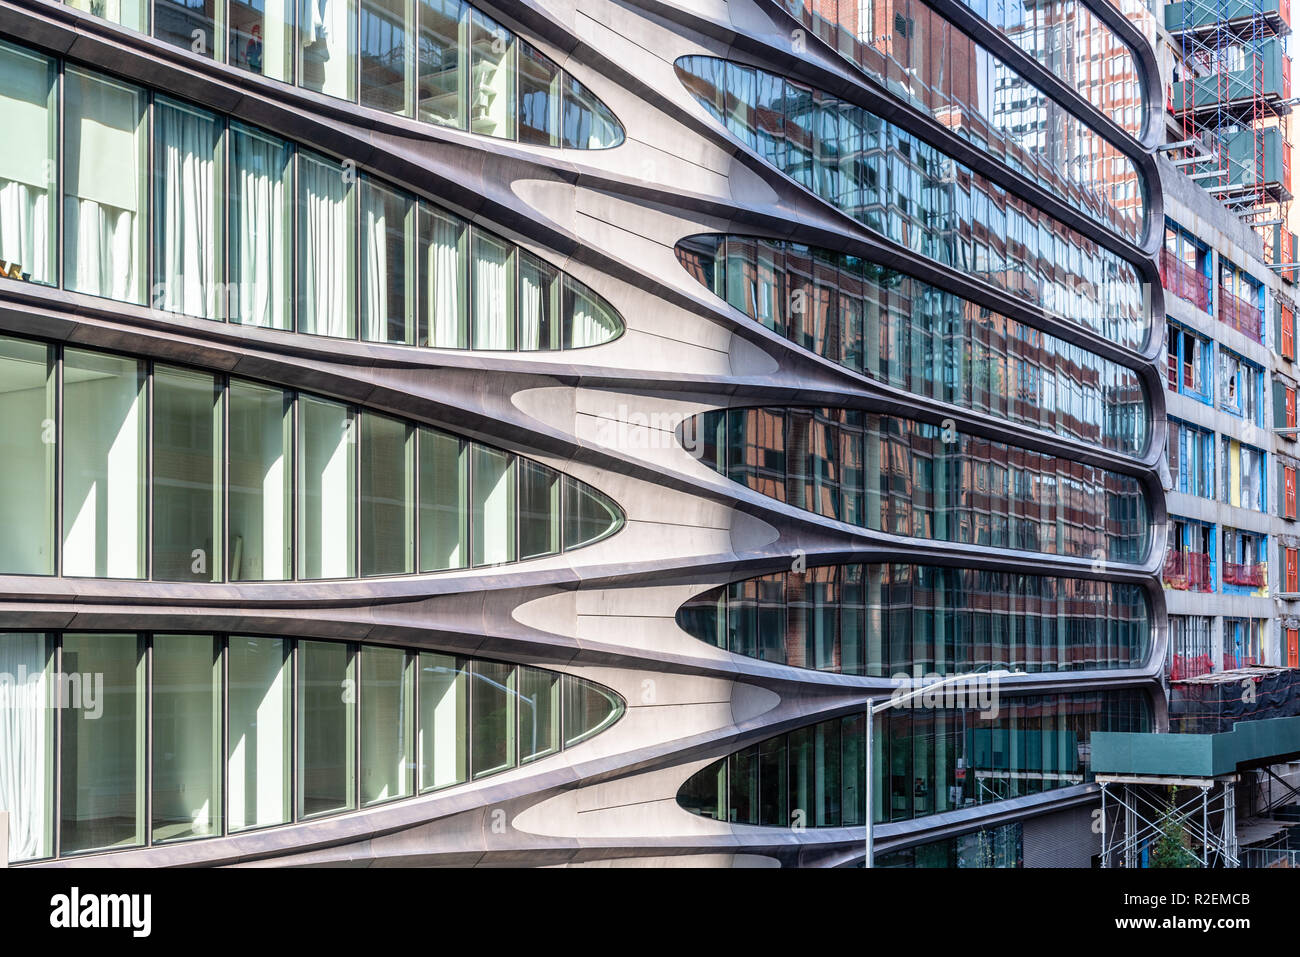 La ville de New York, USA - 22 juin 2018 : vue extérieure de résidences en copropriété, un bâtiment moderne conçu par Zaha Hadid Architects le long de la ligne haute Banque D'Images